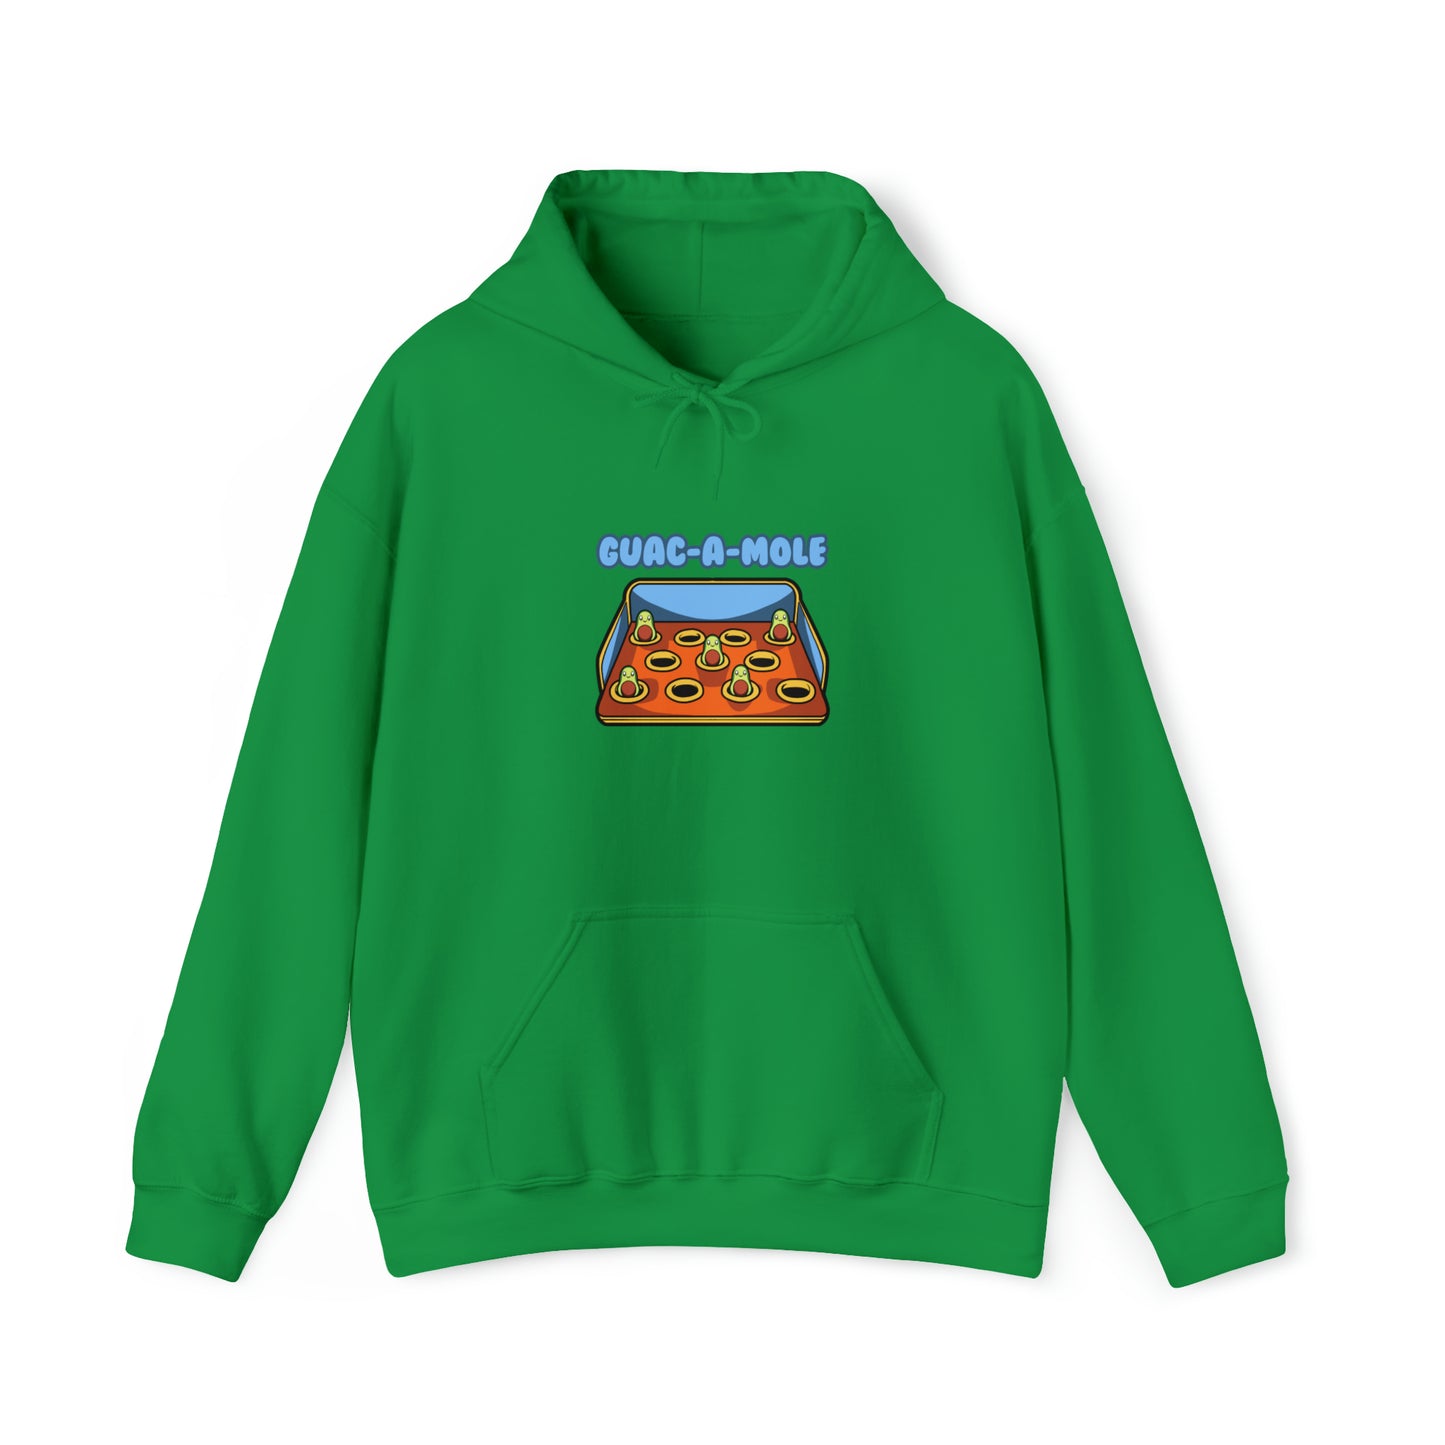 Custom Parody Hooded Sweatshirt, Guac-a-mole design